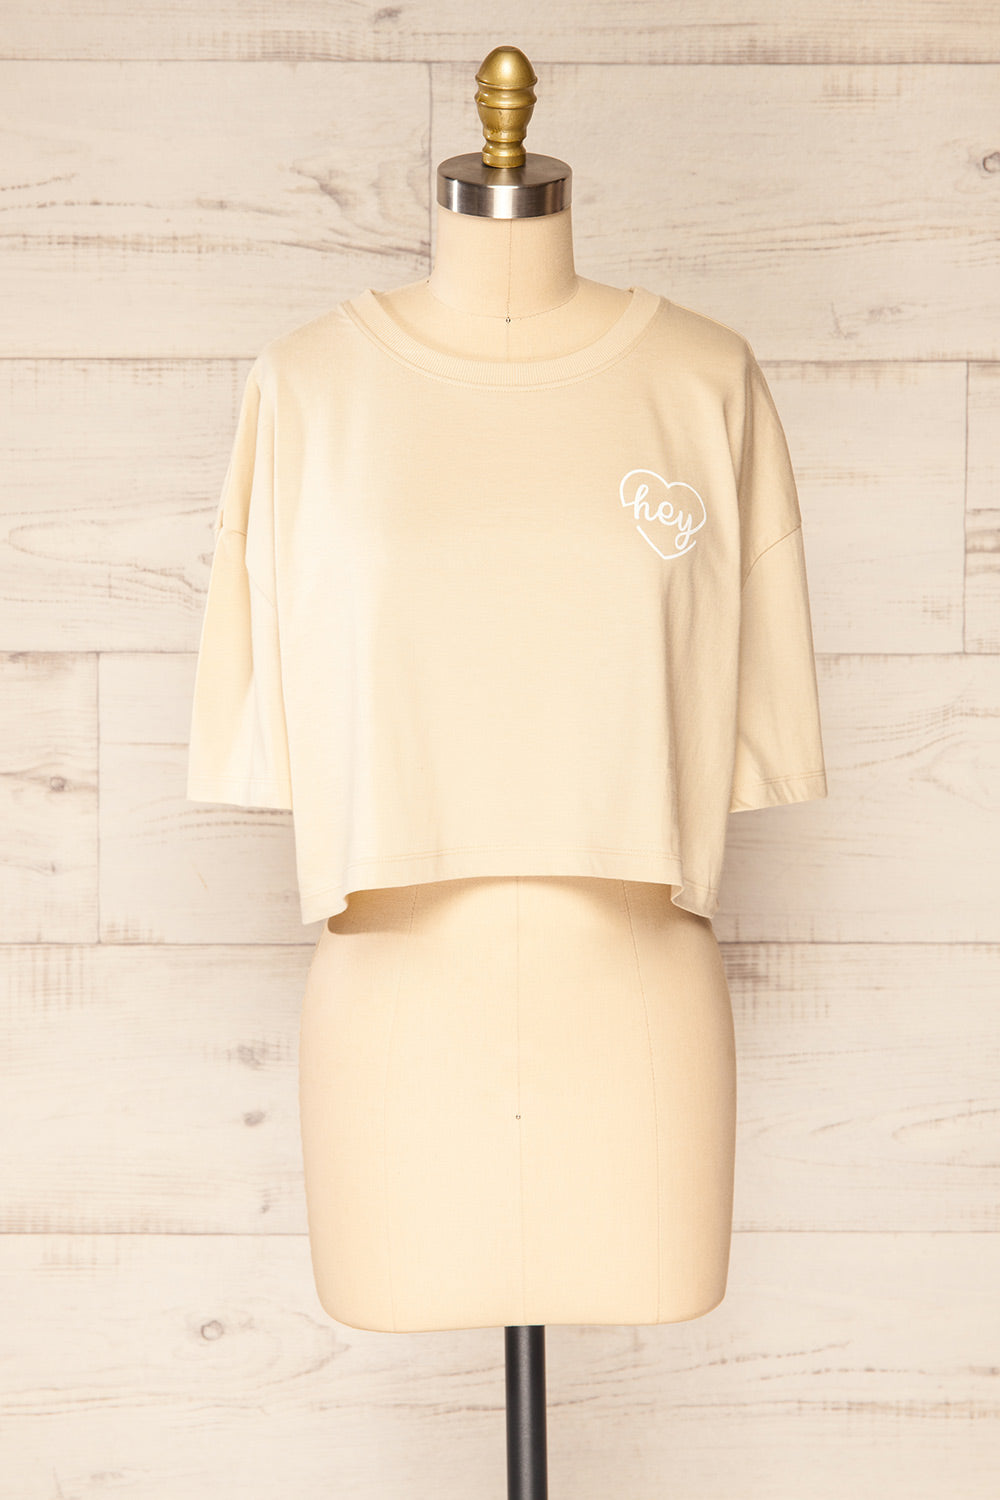 Huy Beige Cropped T-Shirt With Print | La petite garçonne front view 